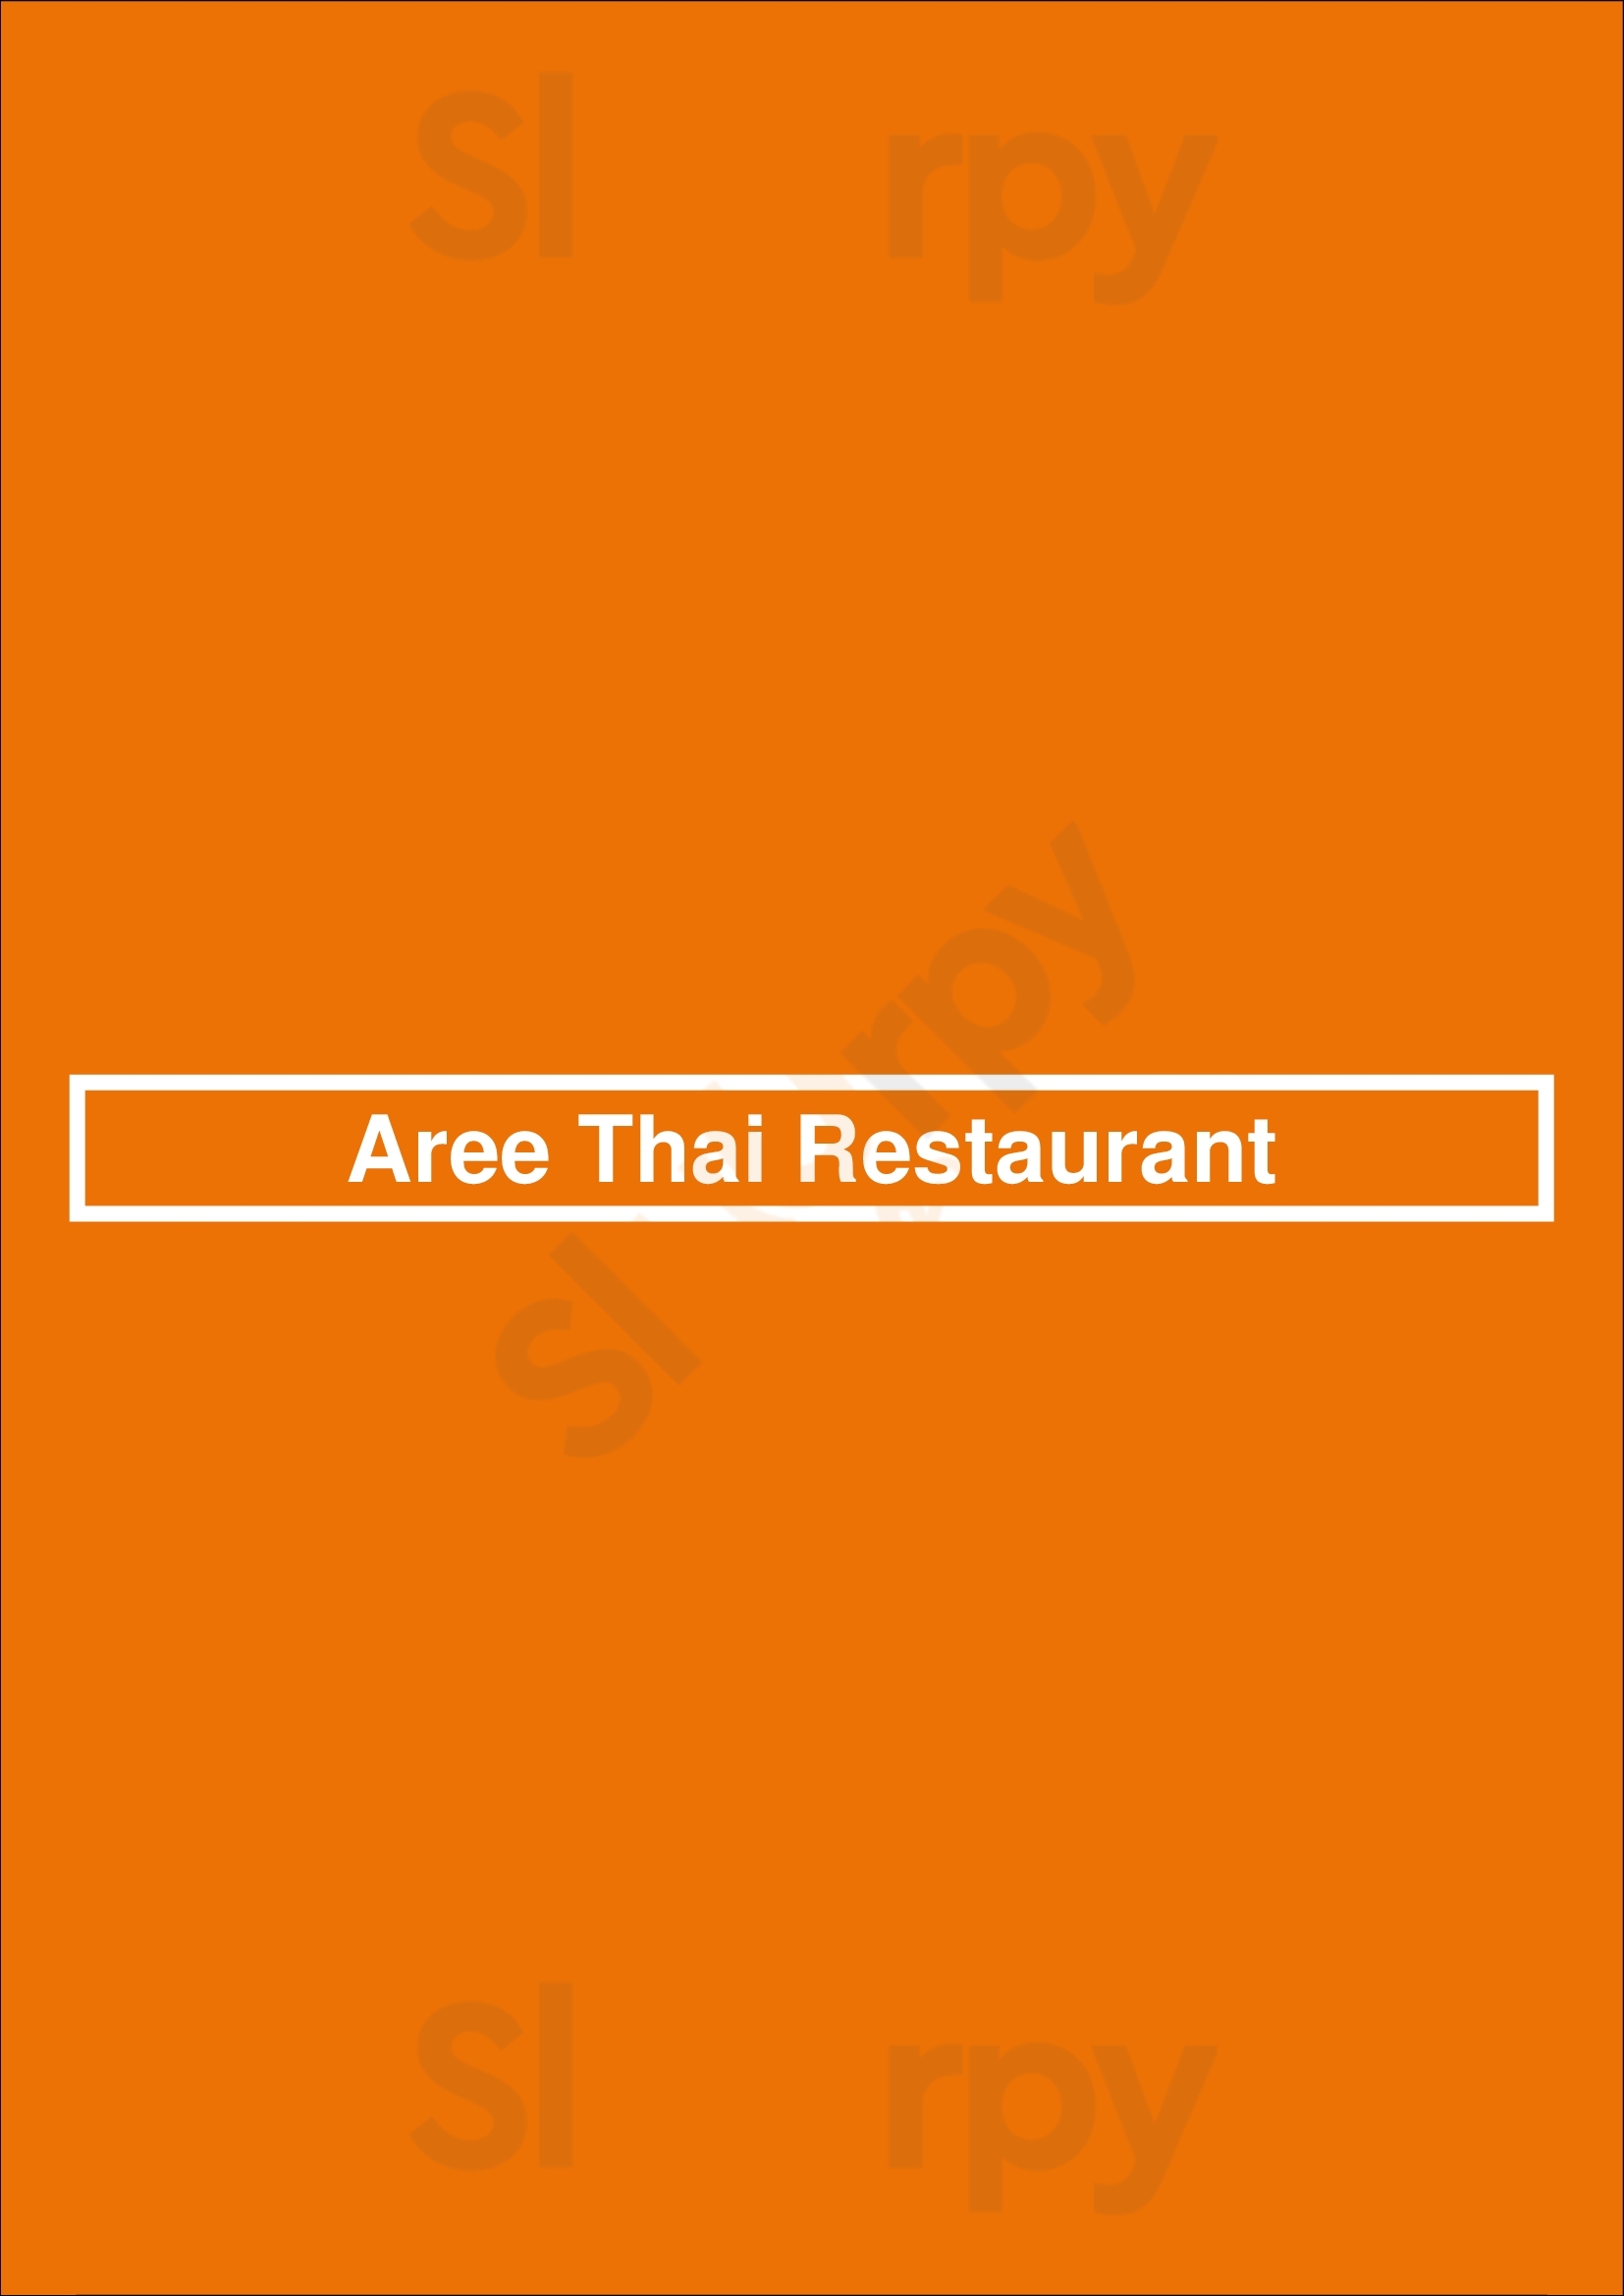 Aree Thai Restaurant Vancouver Menu - 1